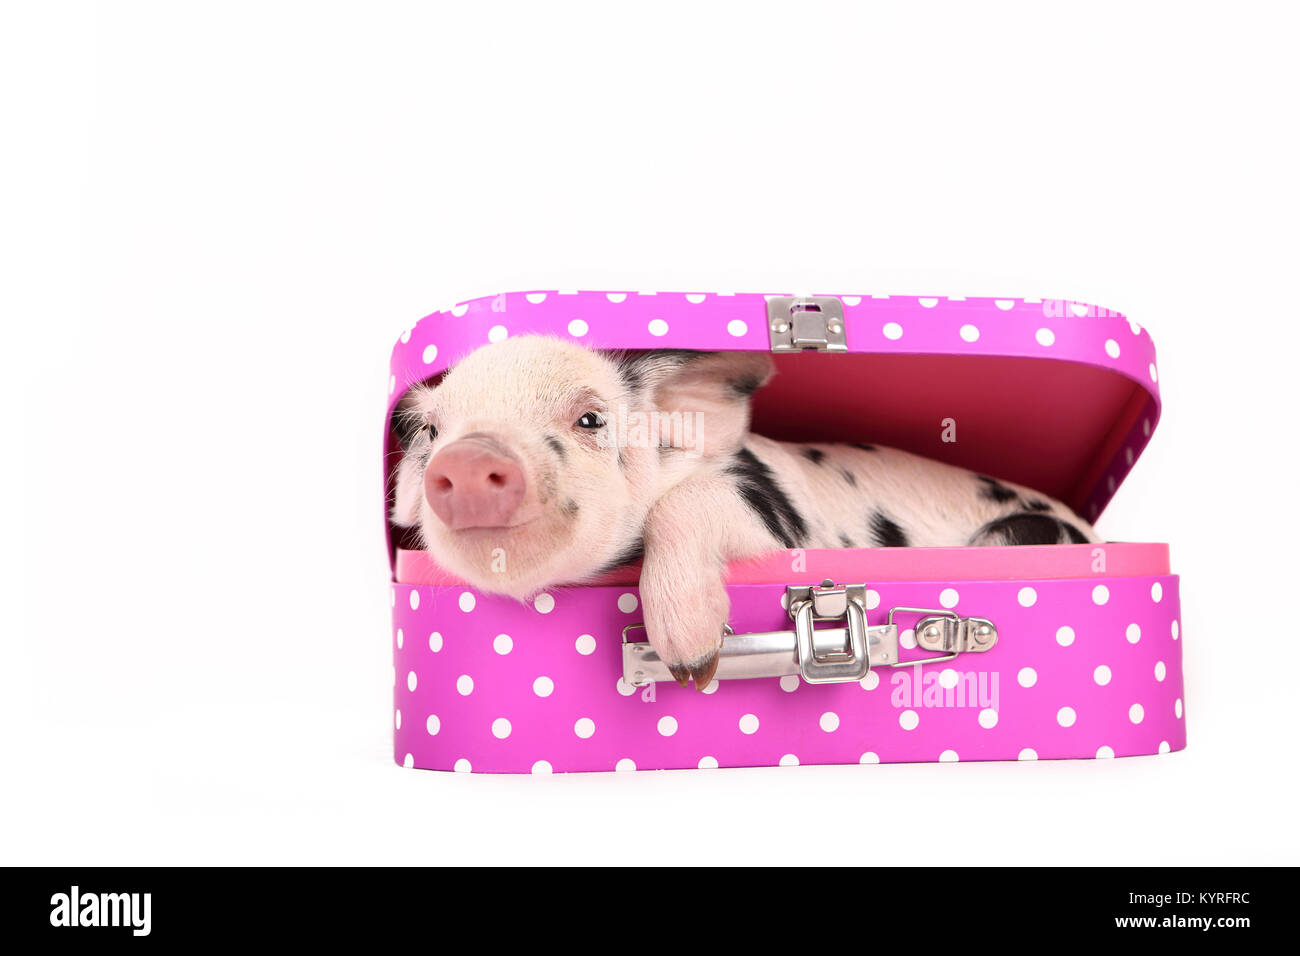 Suini domestici, Turopolje x ?. Maialino (3 settimane di età) giacente in una valigia rosa con pois. Studio Immagine visto contro uno sfondo bianco. Germania Foto Stock